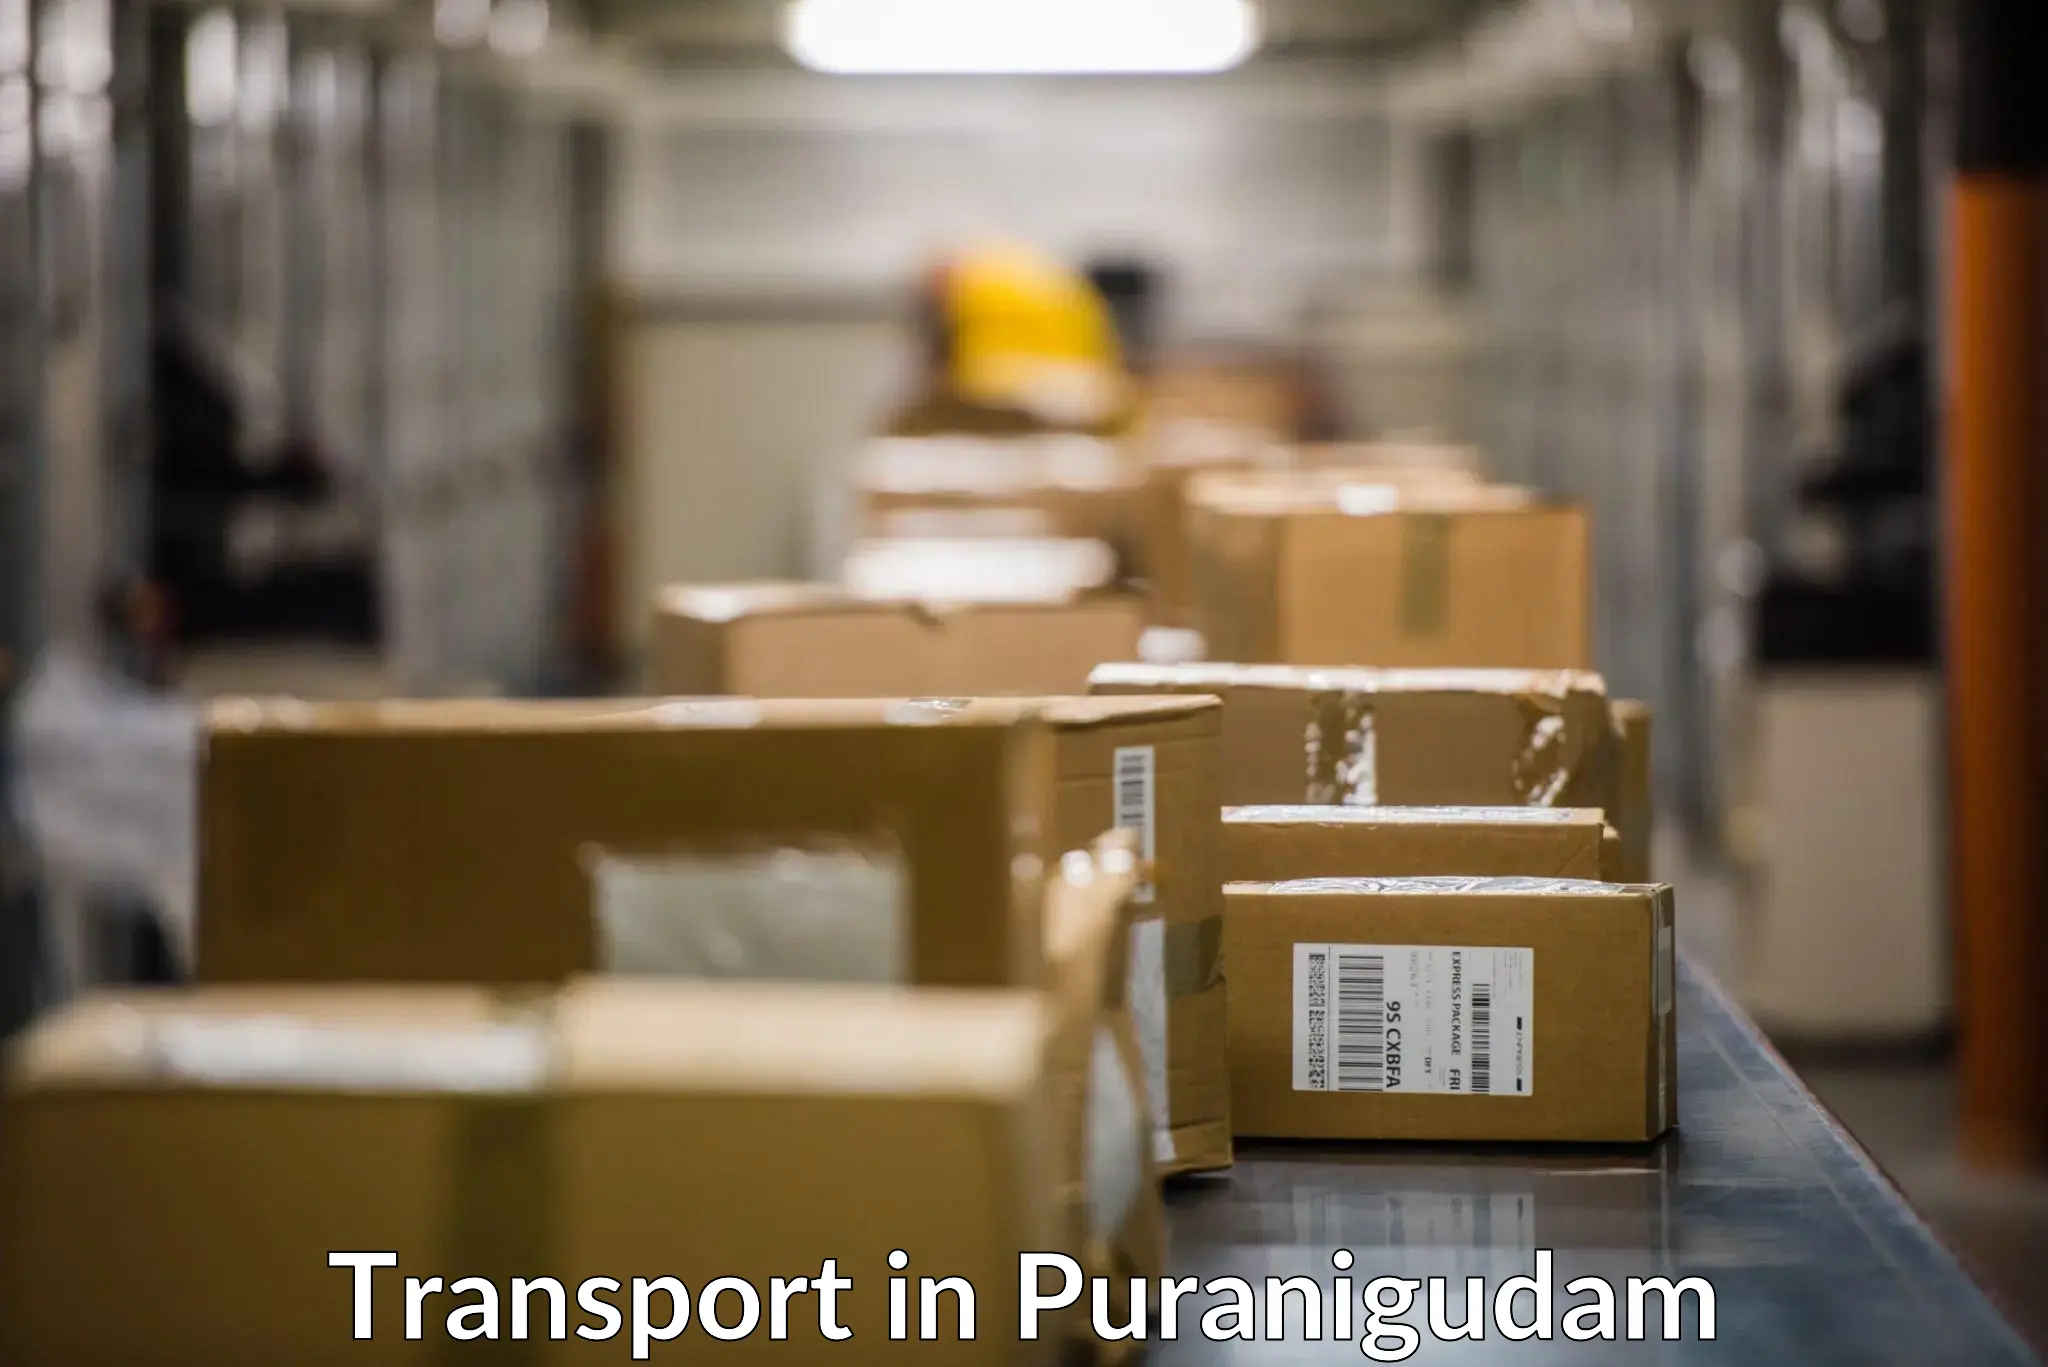 Cargo transport services in Puranigudam